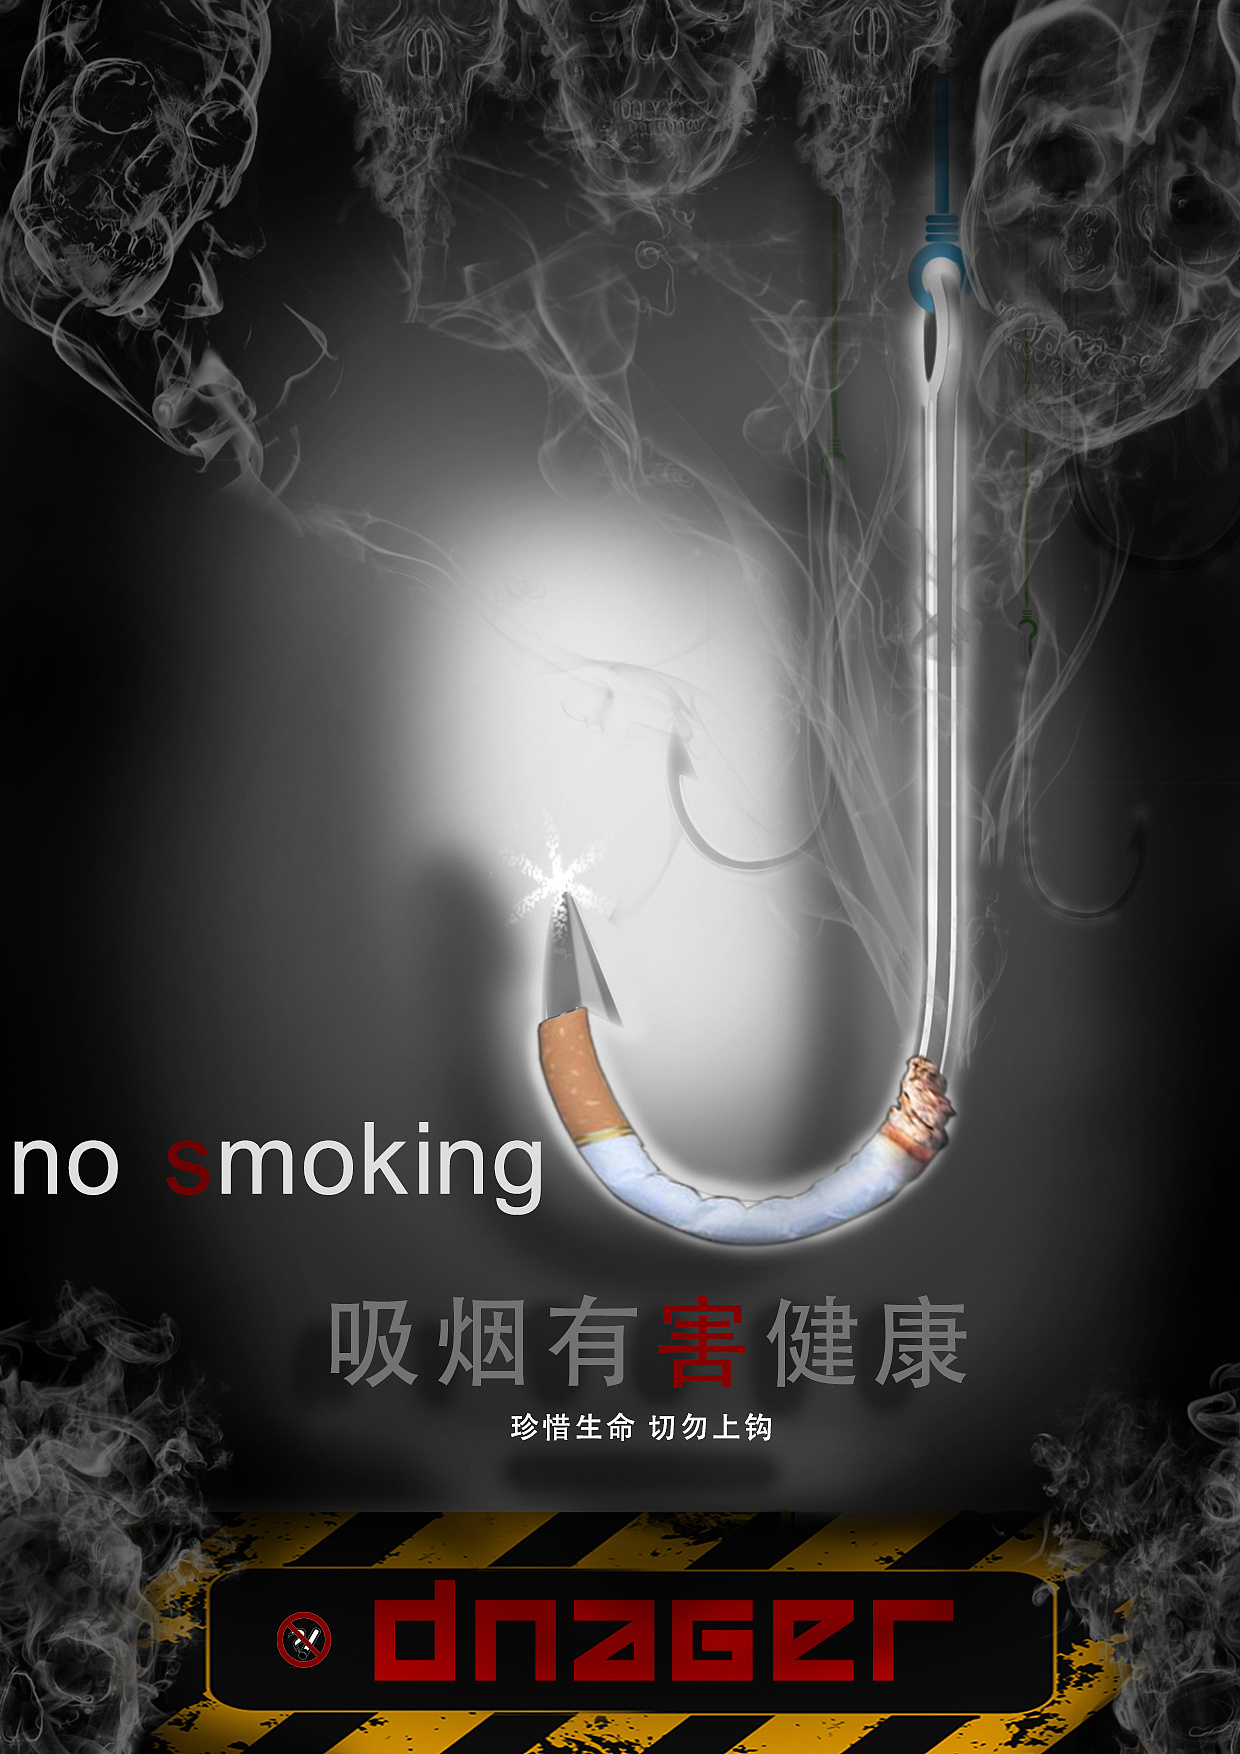 戒烟广告萨拉德图片